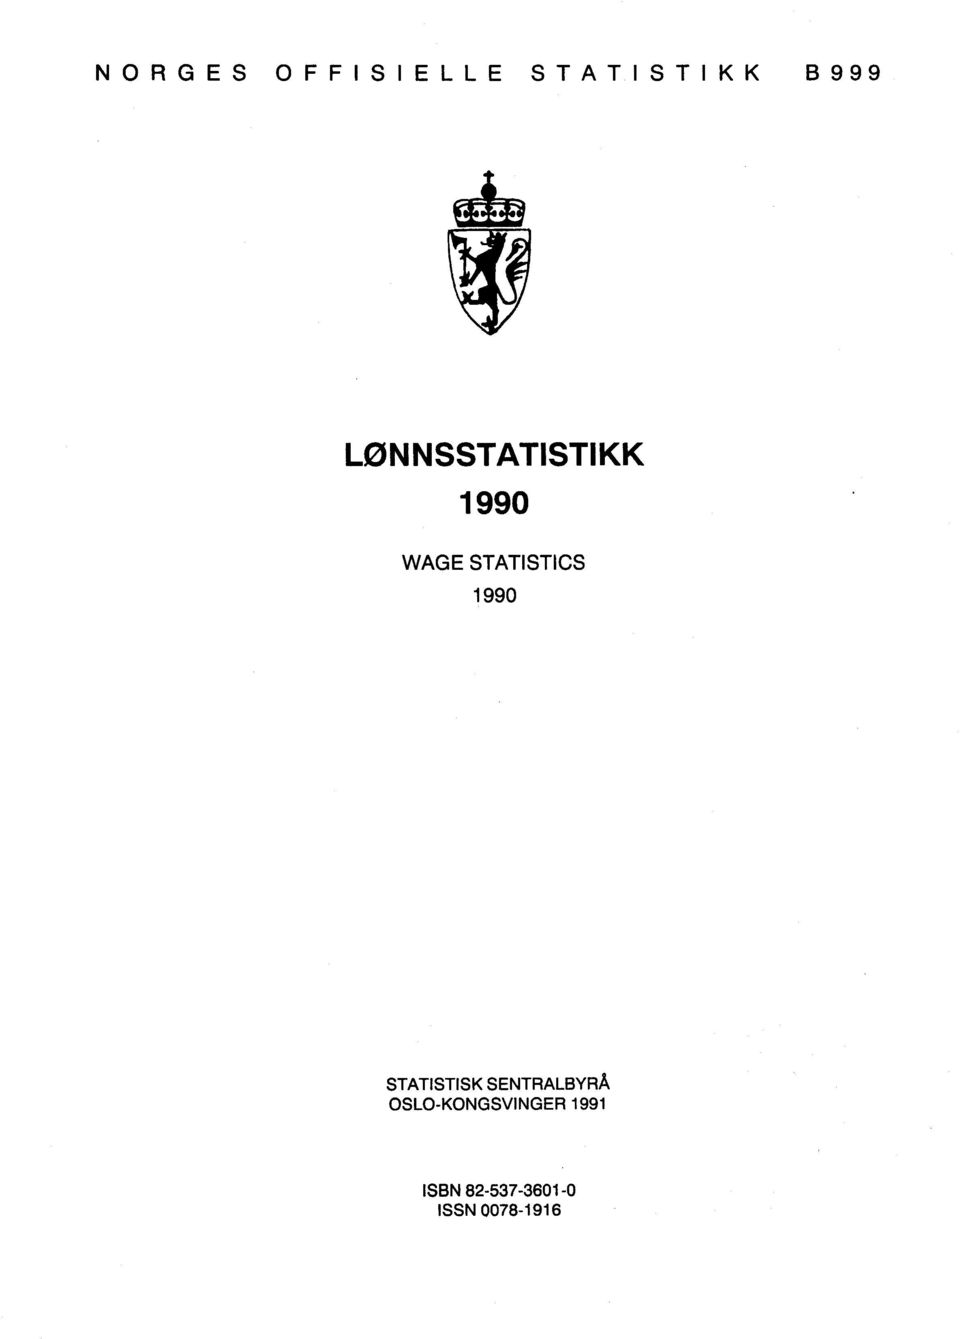 1990 STATISTISK SENTRALBYRÅ